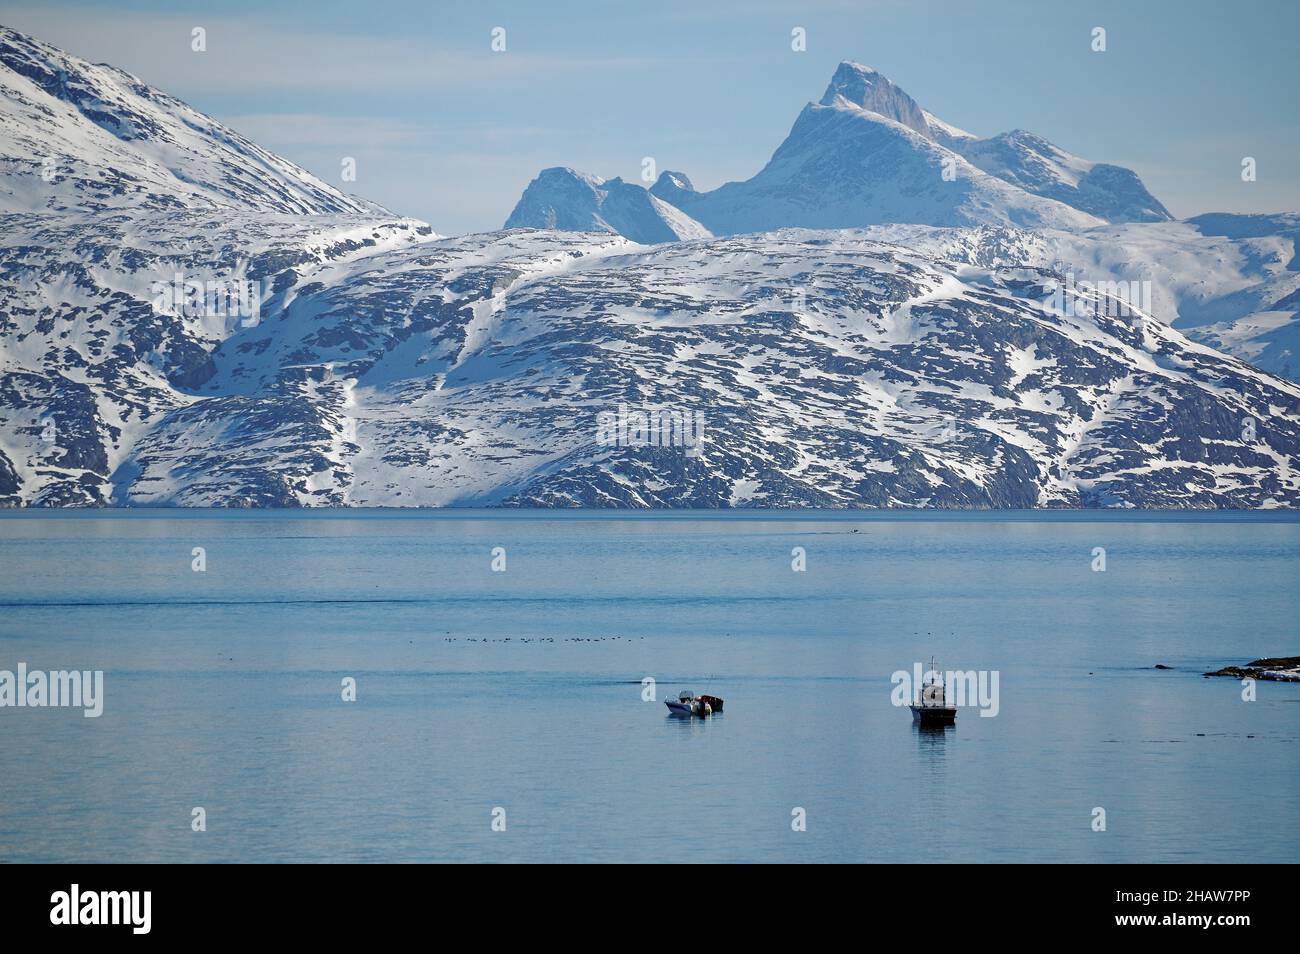 Bateaux dans le fjord, paysage de montagne enneigé, Nuuk, Arctique, Amérique du Nord, Groenland,Danemark Banque D'Images